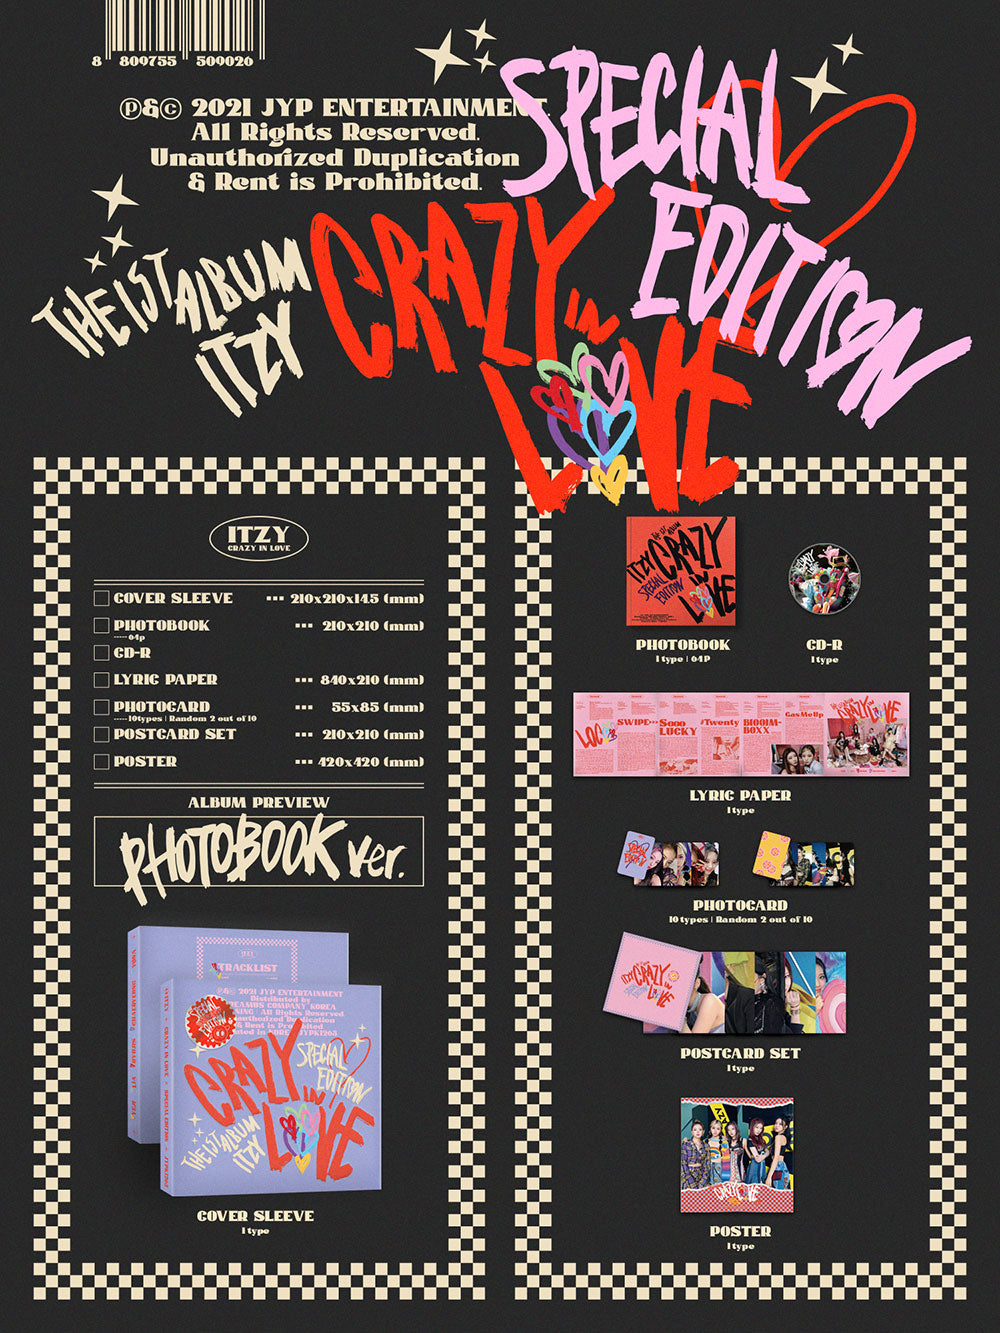 ITZY - CRAZY IN LOVE [1st Album - PHOTOBOOK Ver.] (Special Edition)